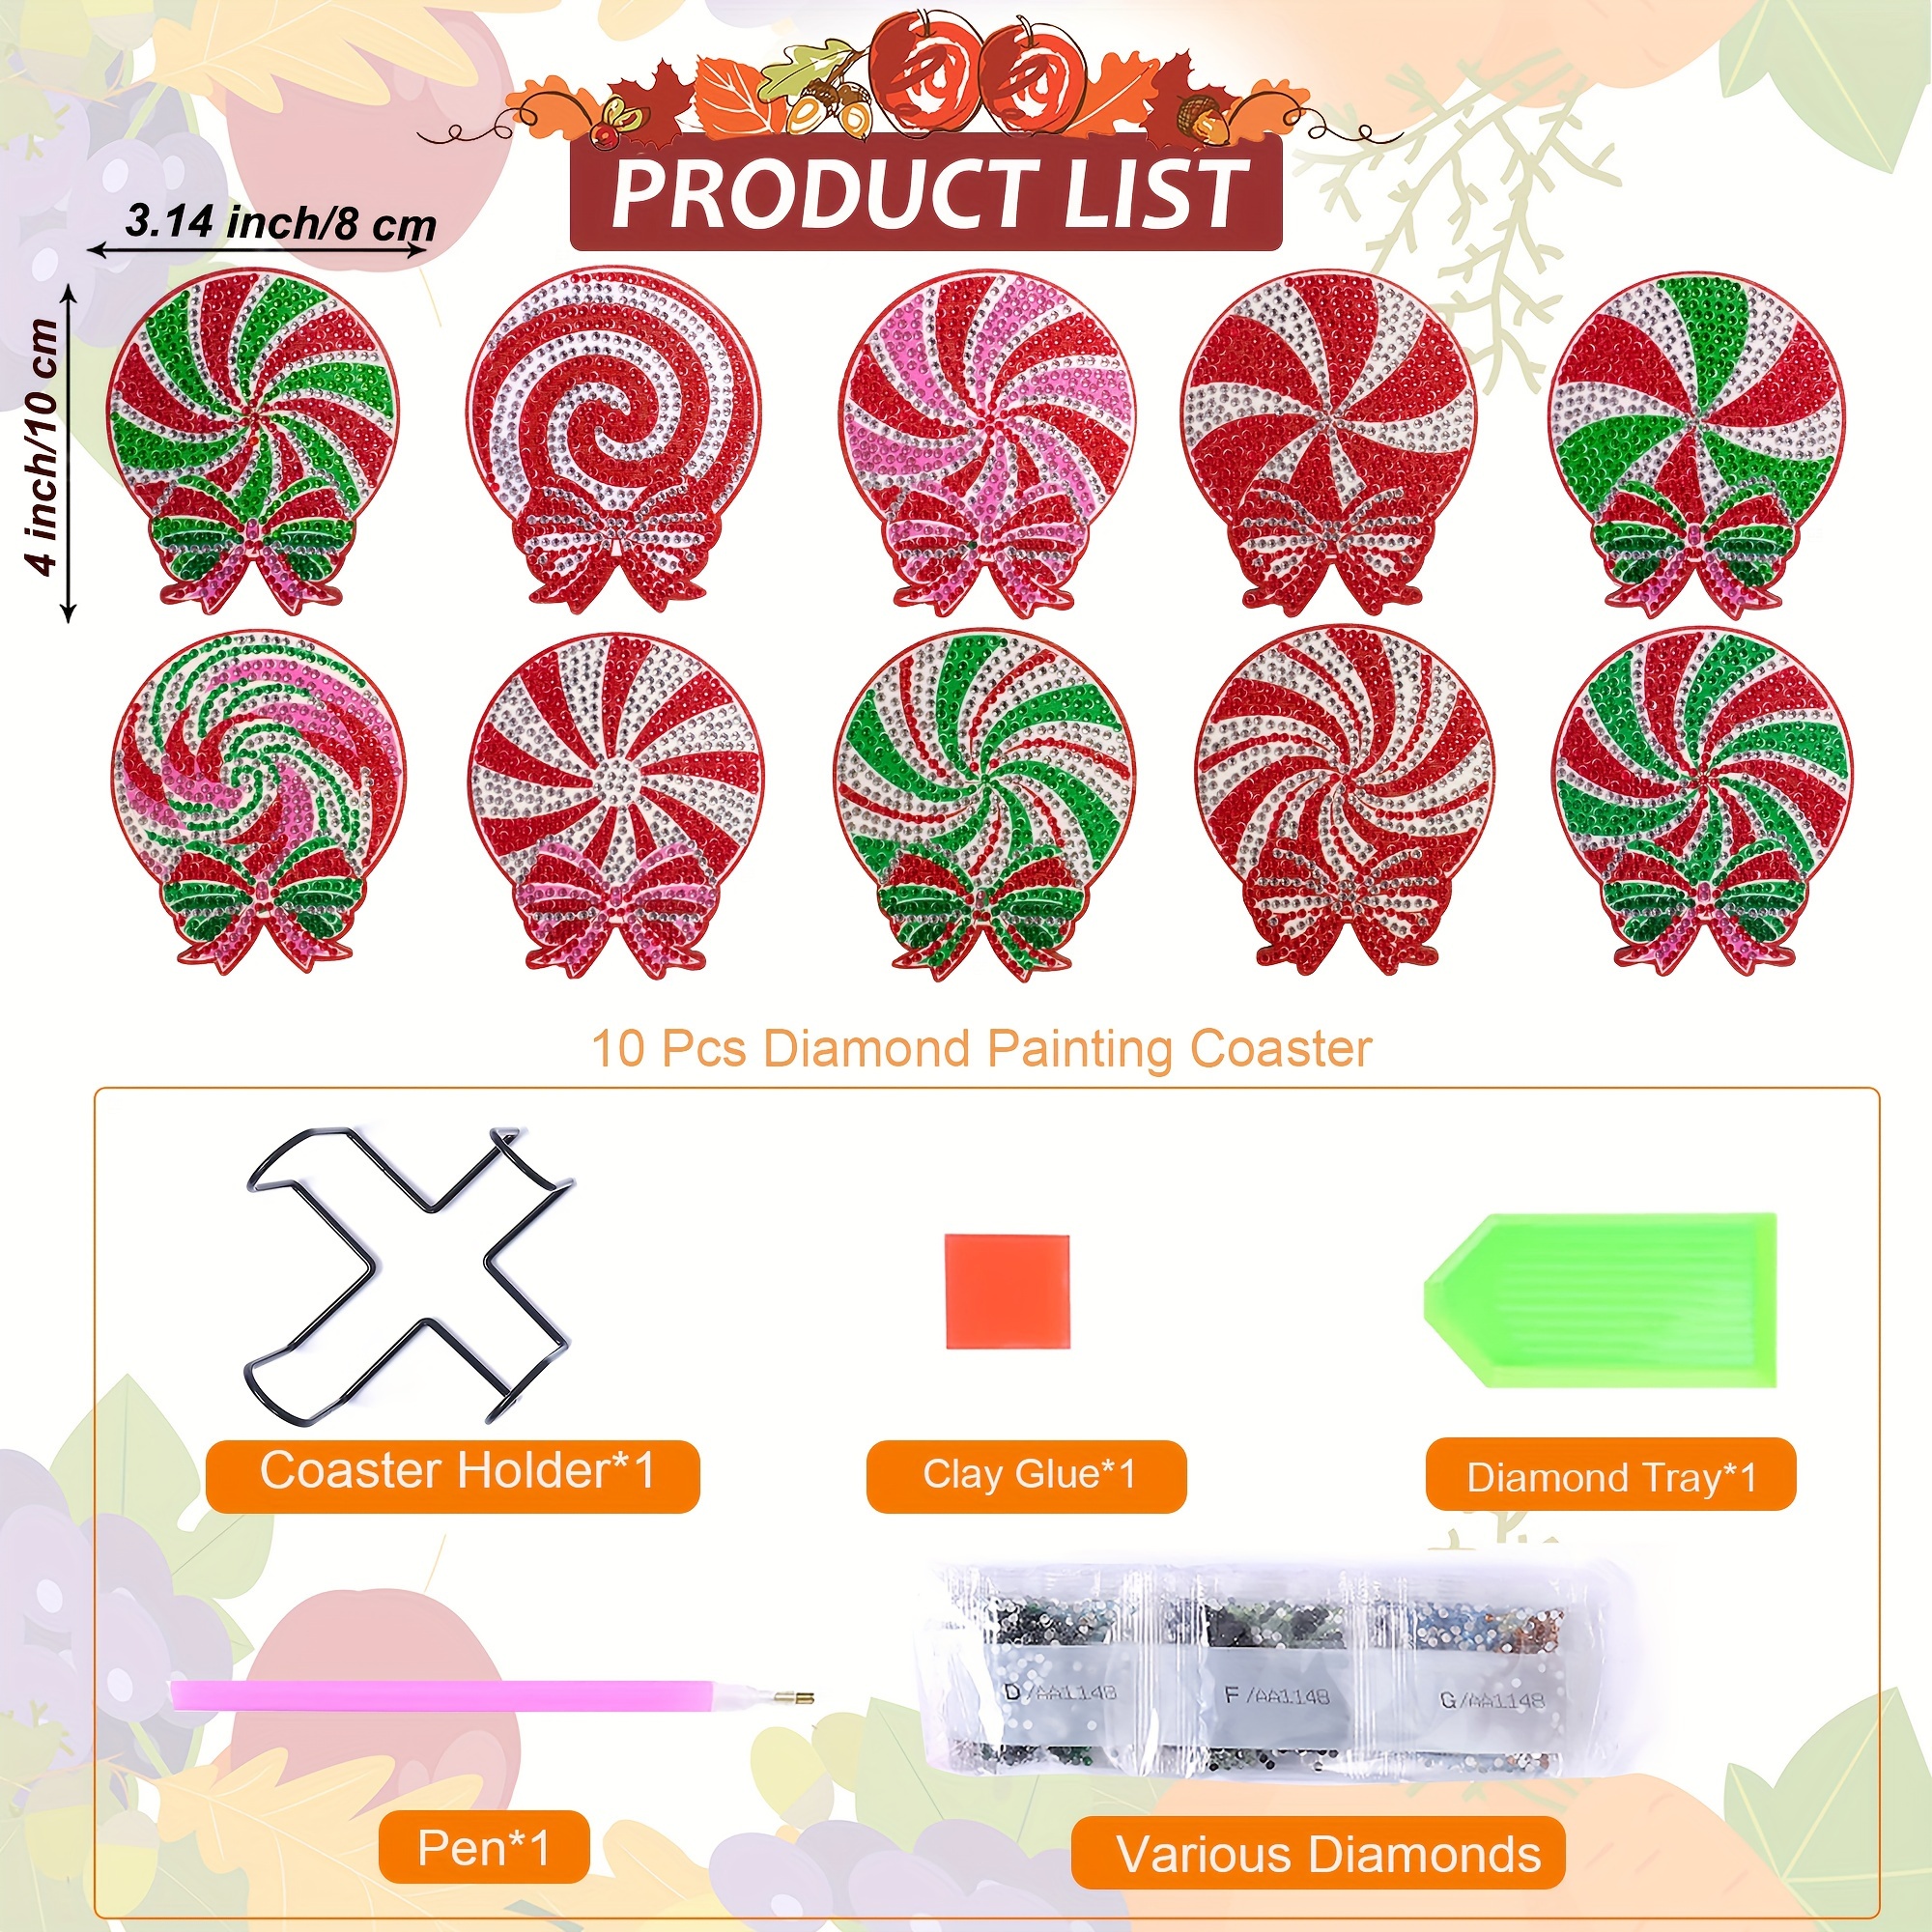 10Pcs Diamond Painting Coasters Kit DIY Diamond Art Coasters with